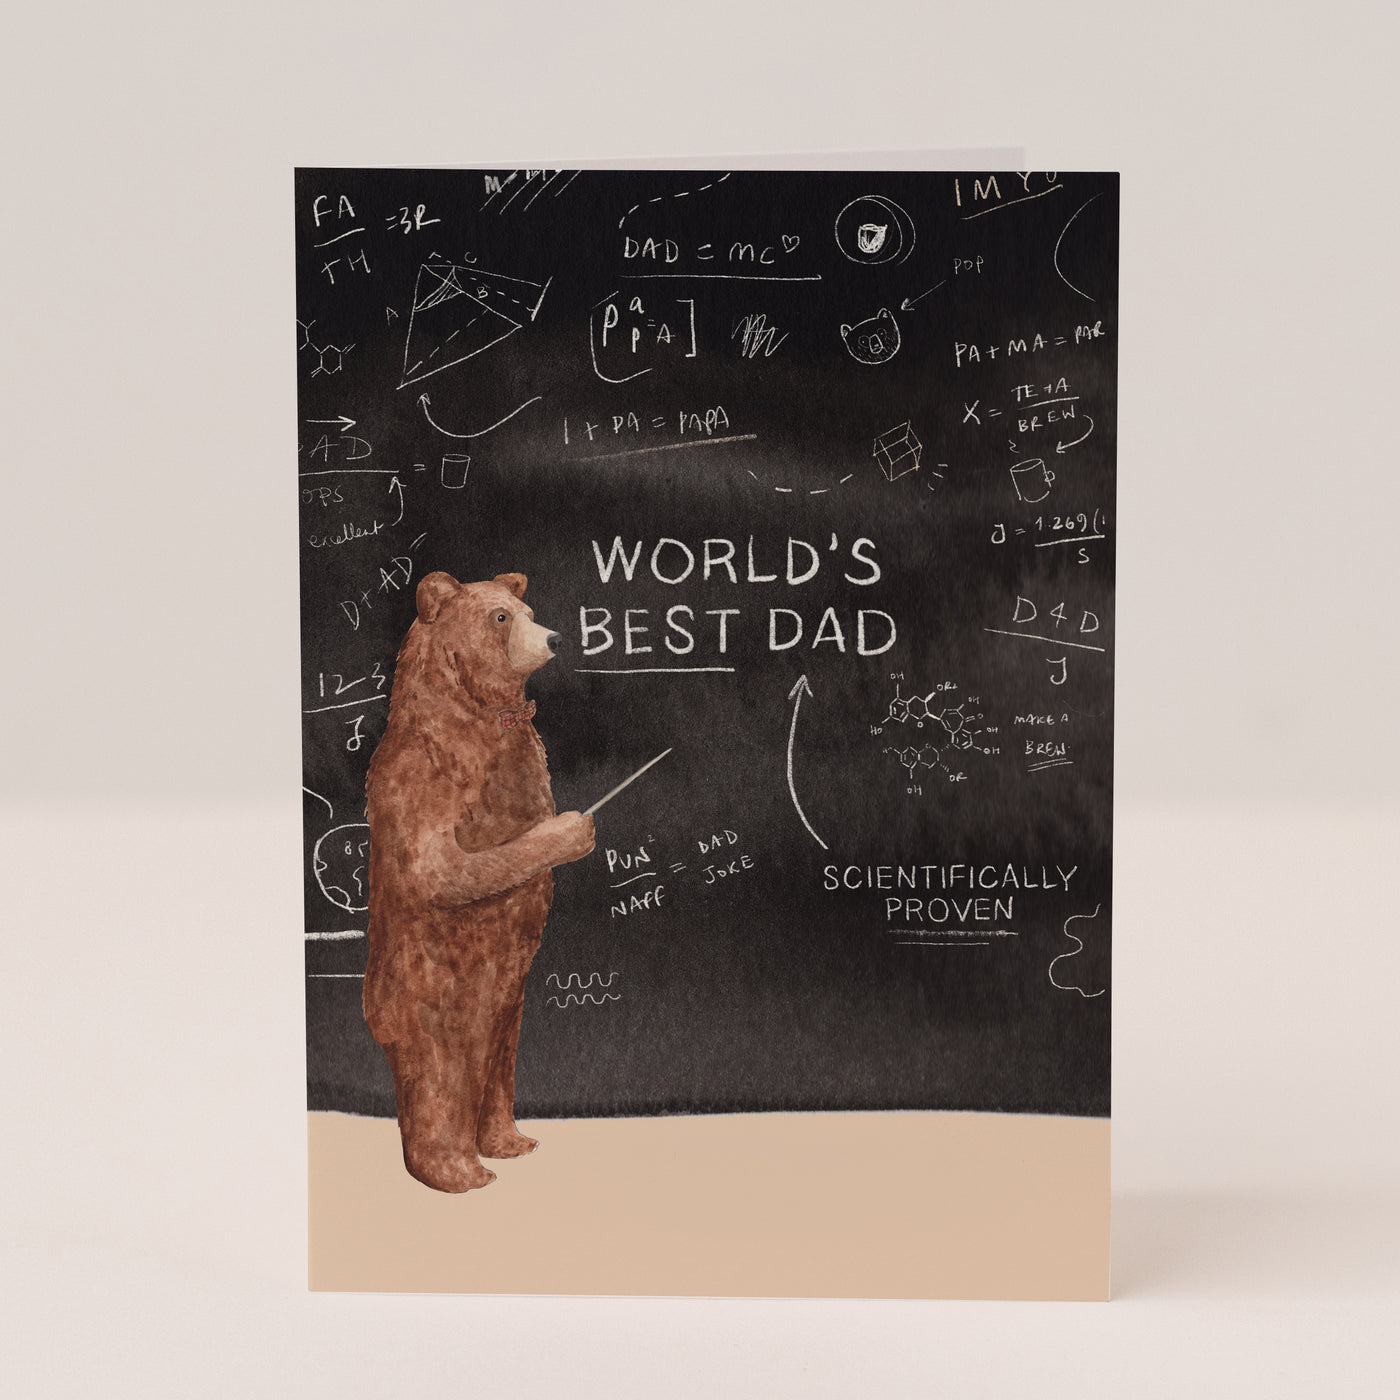 World's Best Dad Card